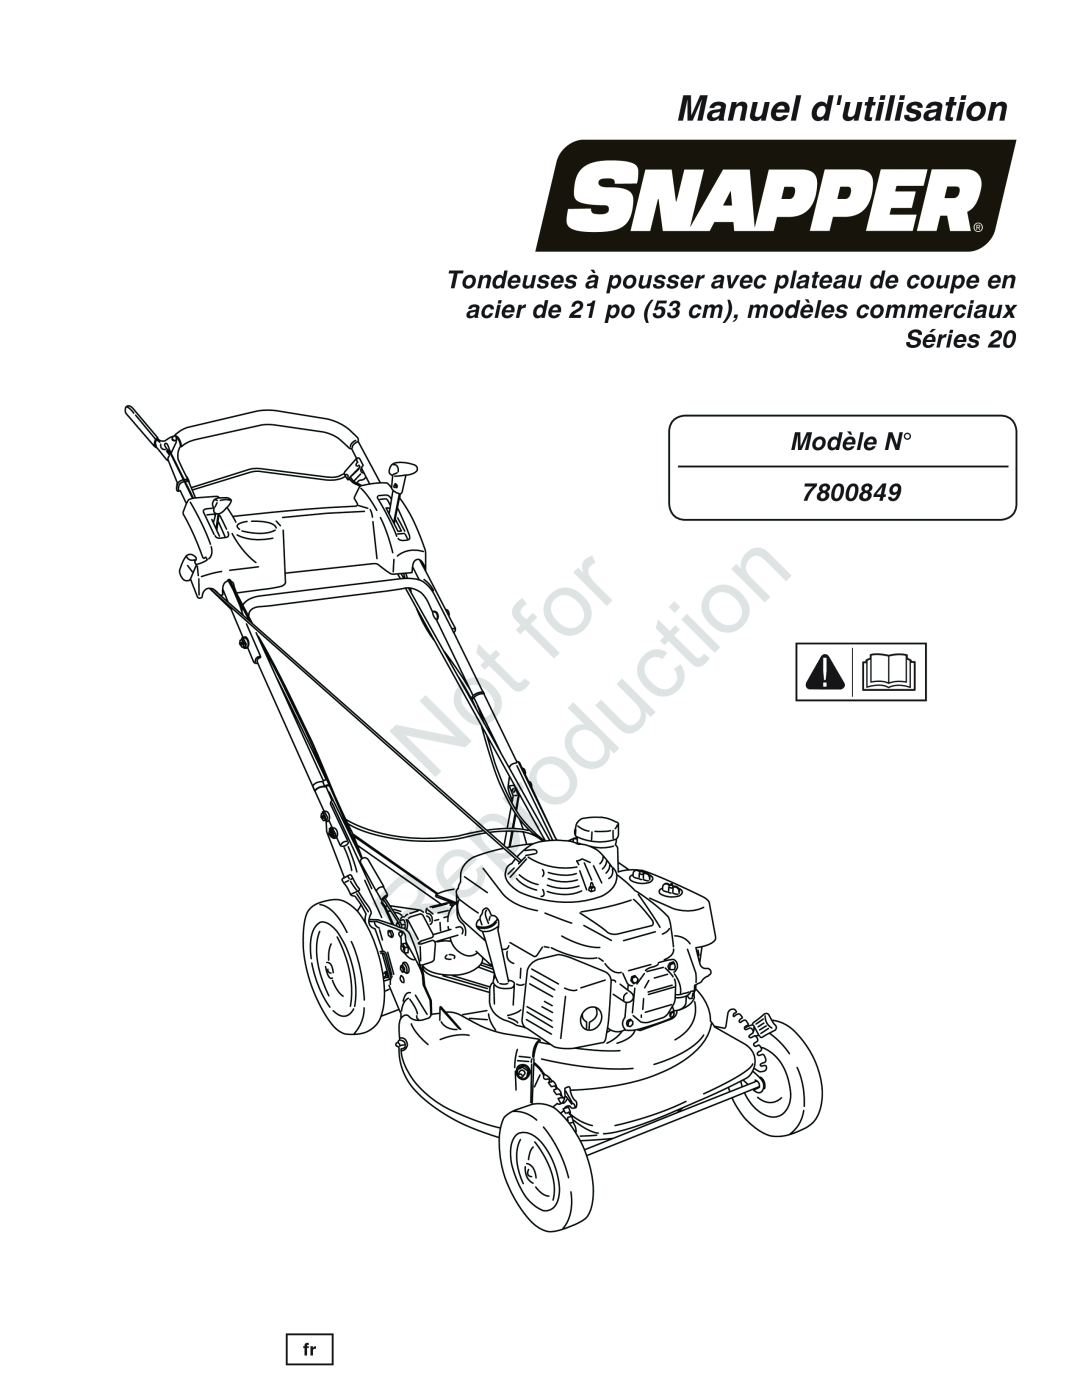 Snapper manual Manuel dutilisation, Modèle N 7800849, Reproduction 